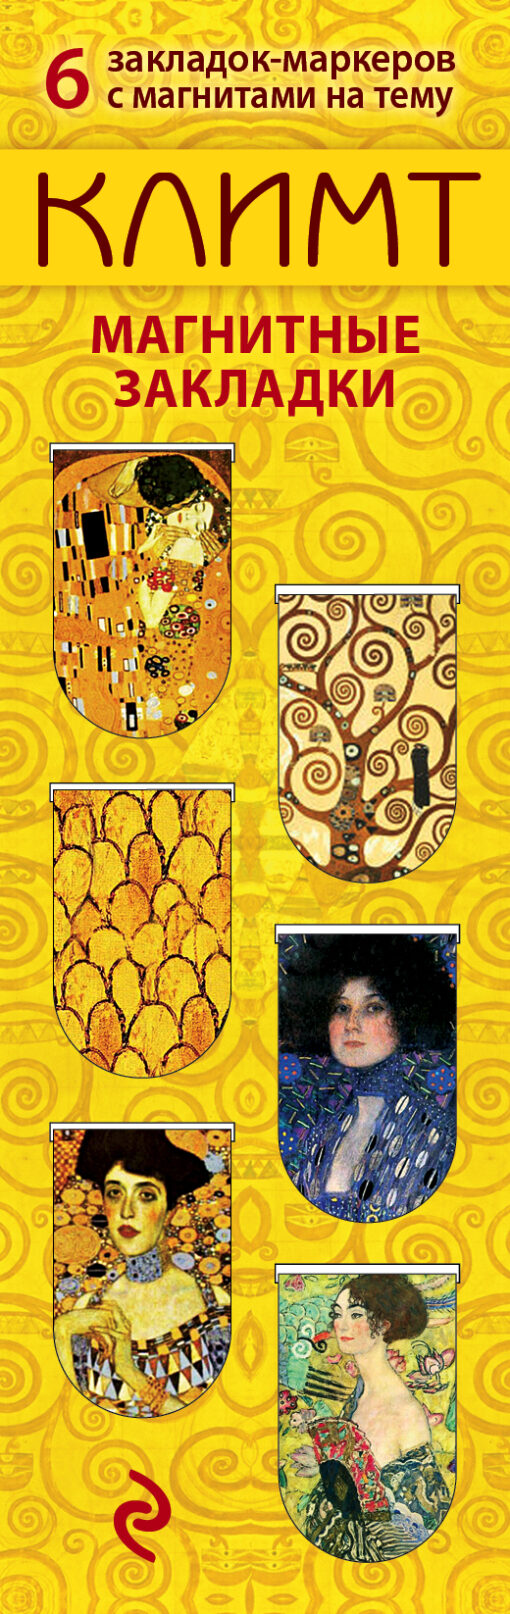 Magnetic bookmarks. Klimt